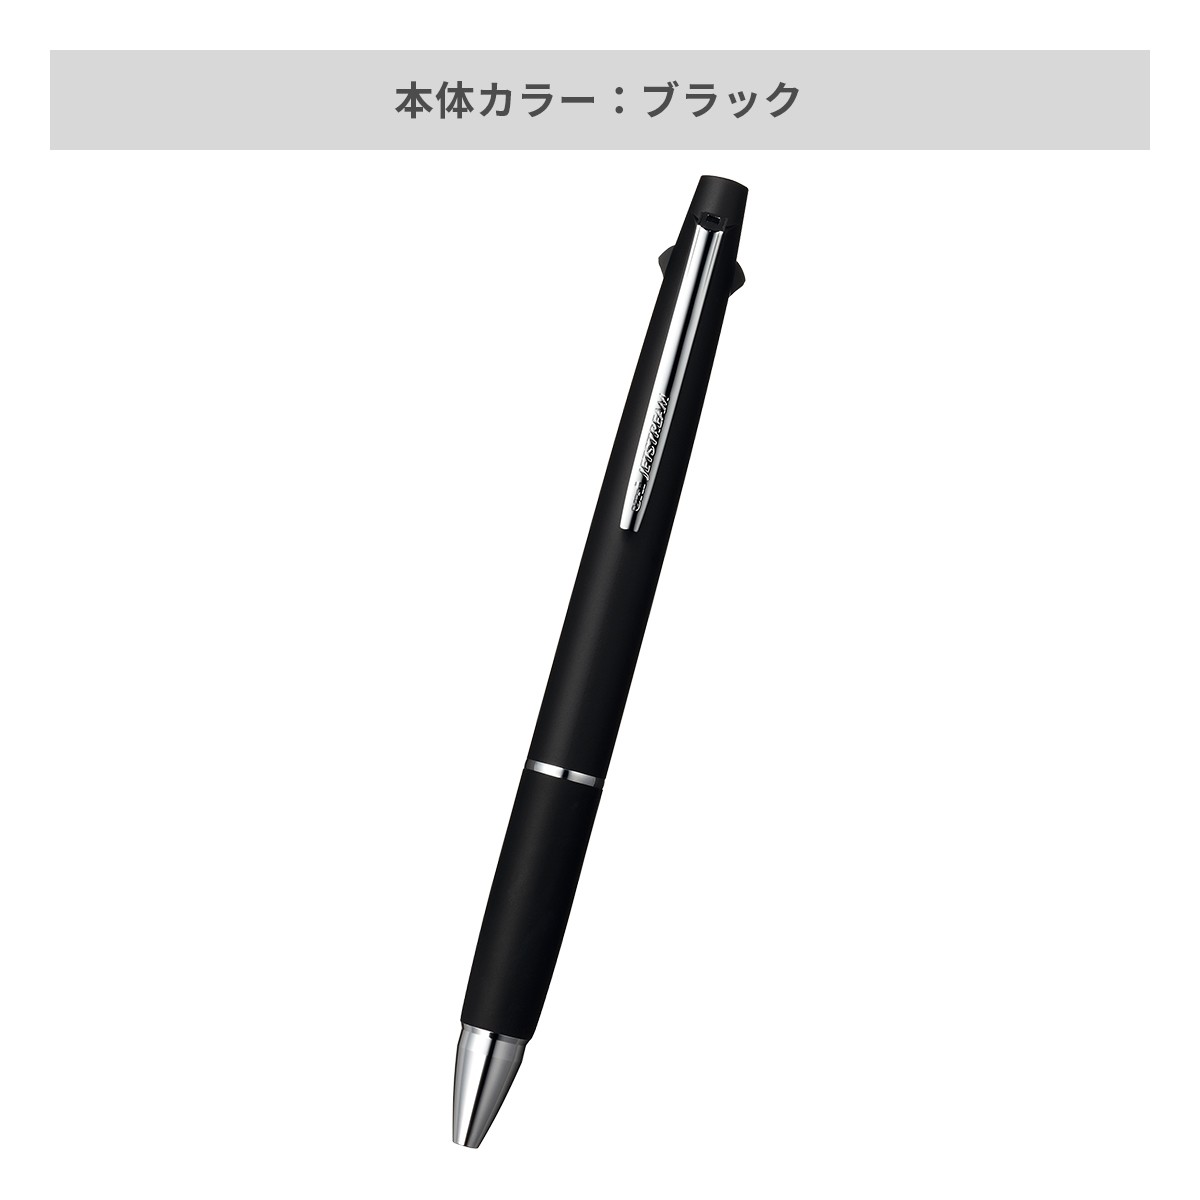 【短納期】三菱鉛筆 ジェットストリーム 多機能ペン 2&1 0.5mm【多機能ペン / レーザー彫刻】 画像3